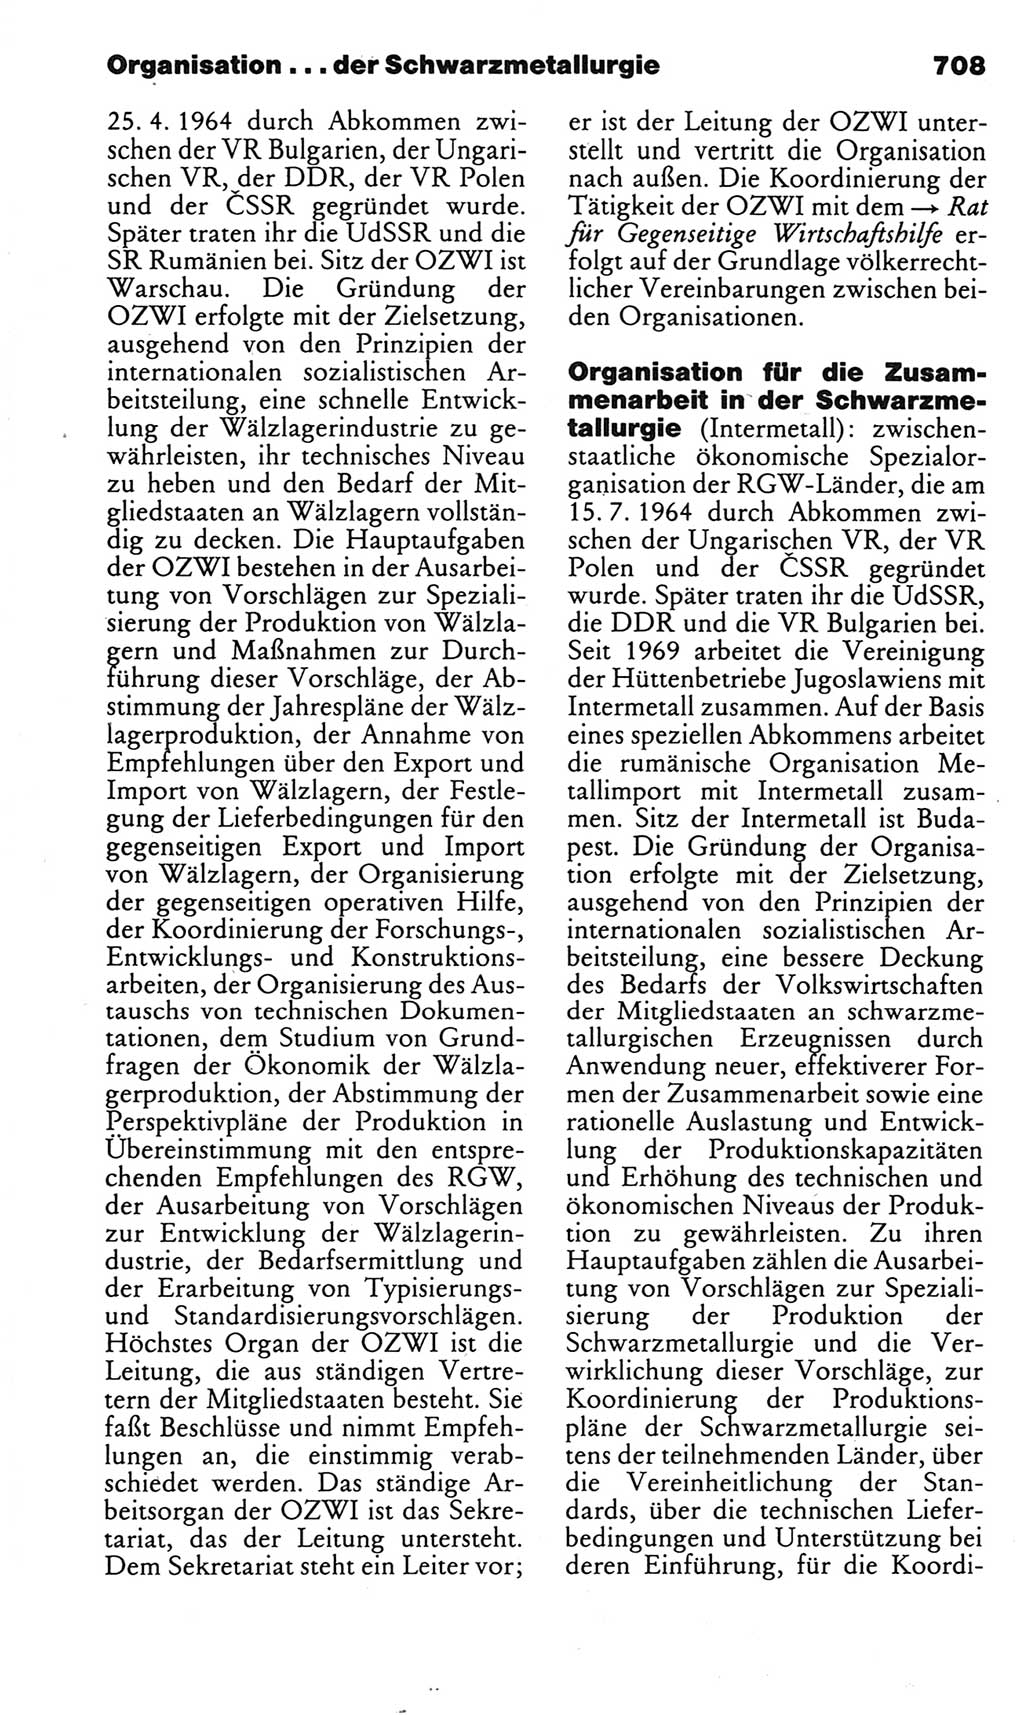 Kleines politisches Wörterbuch [Deutsche Demokratische Republik (DDR)] 1983, Seite 708 (Kl. pol. Wb. DDR 1983, S. 708)